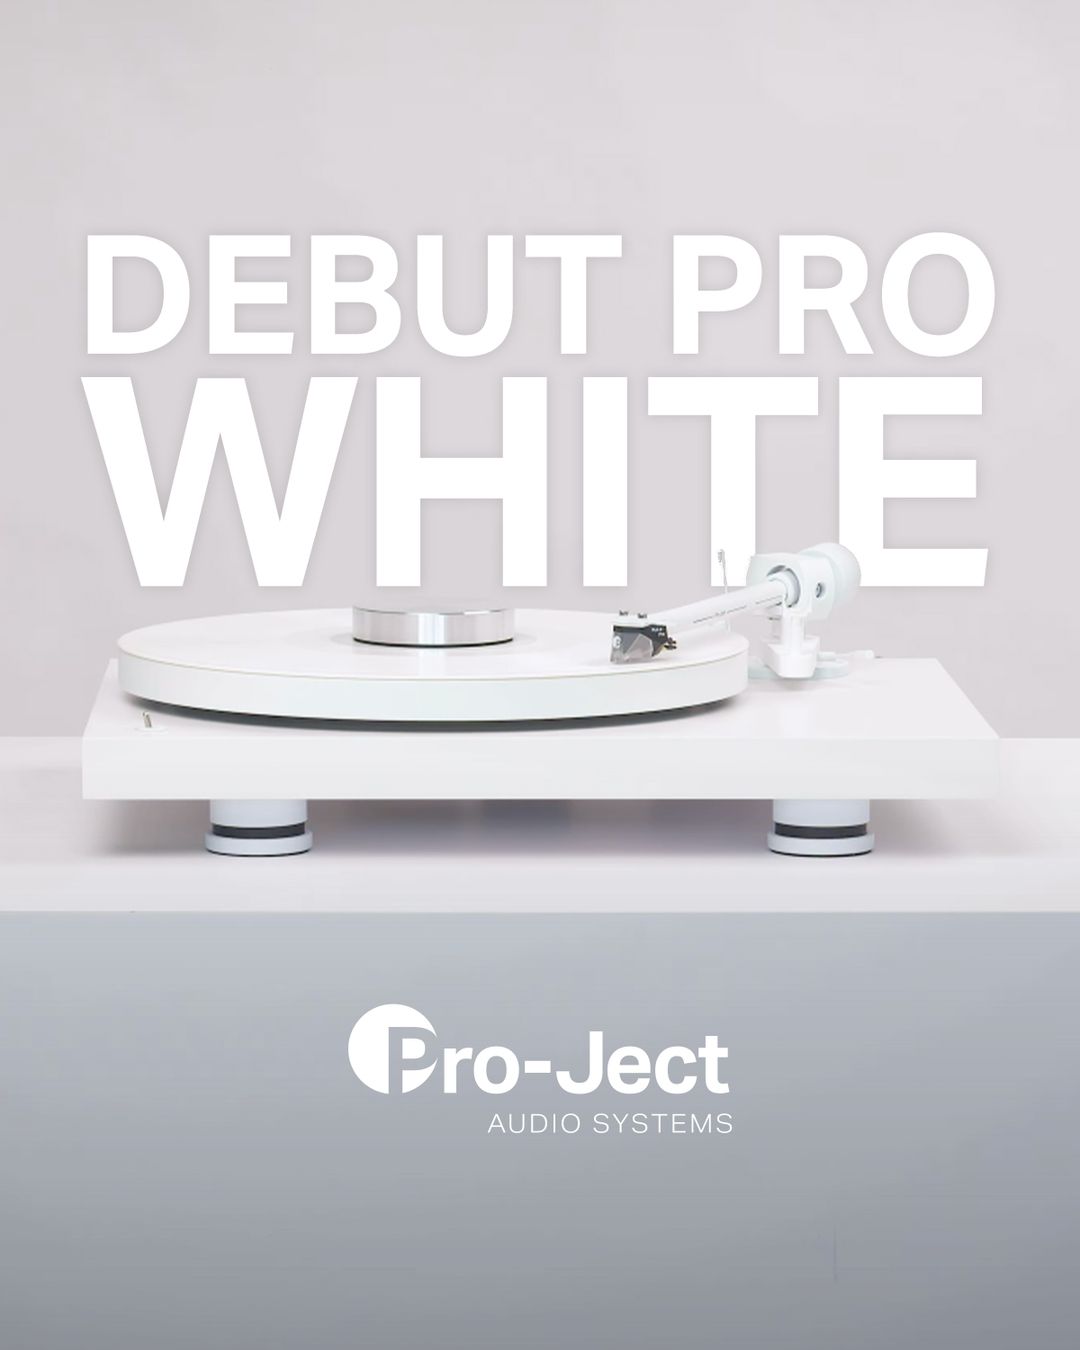 Pro-Ject Debut PRO ALL WHITE levysoitin  30 -v juhlasoitin, Ortofon 2M White äänirasia, valkoinen